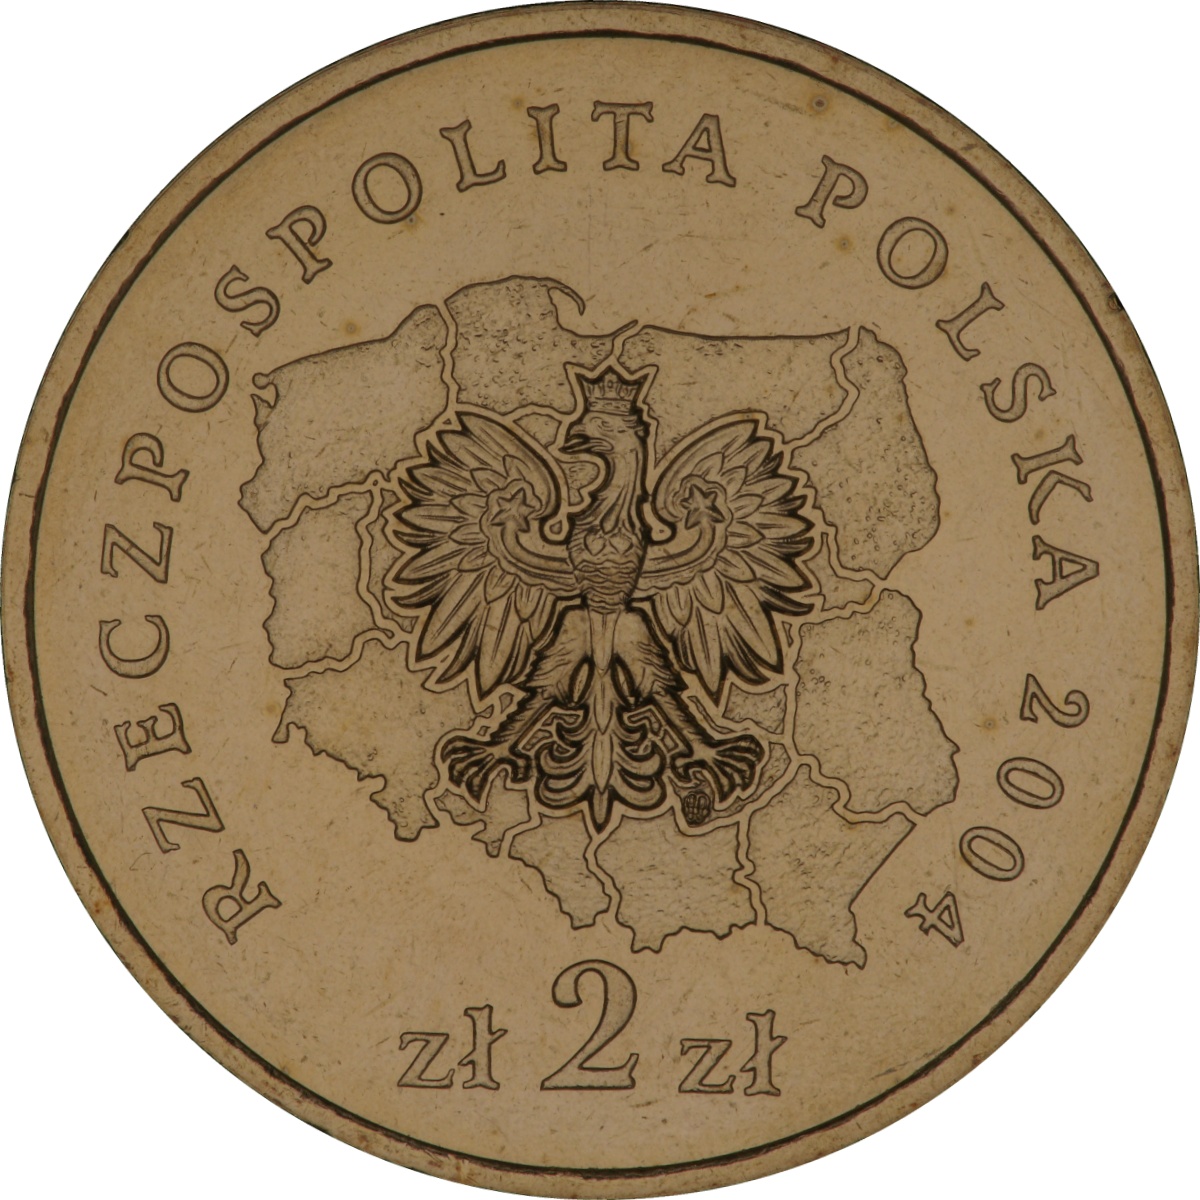 2zl-okolicznosciowe-wojewodztwo-slaskie-awers-monety